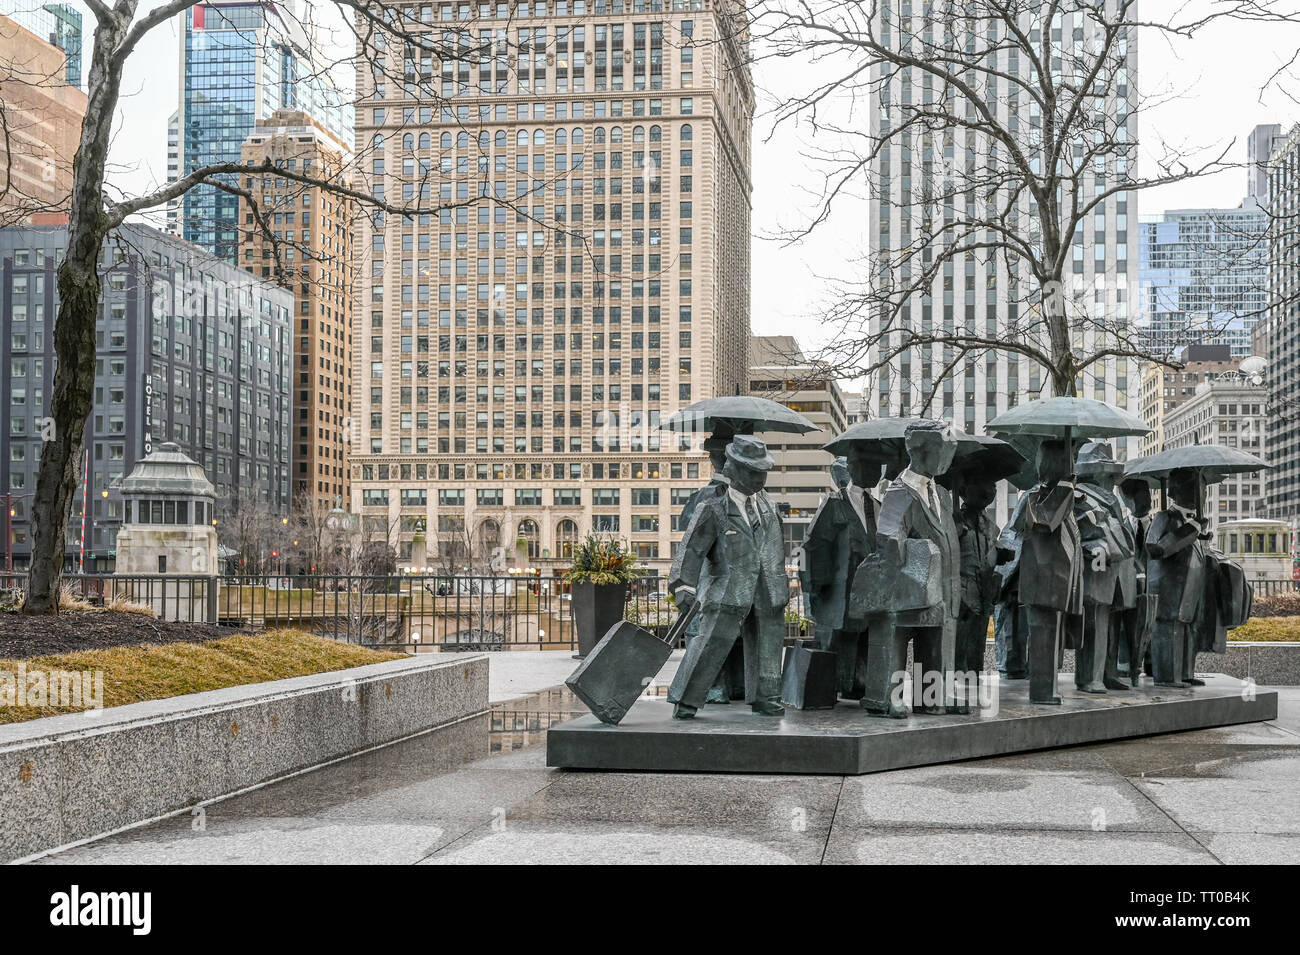 Die Herren Skulpturen bei der AMA Plaza in chcago am nördlichen Ufer des Chicago River an einem regnerischen Tag im März 2019. Stockfoto